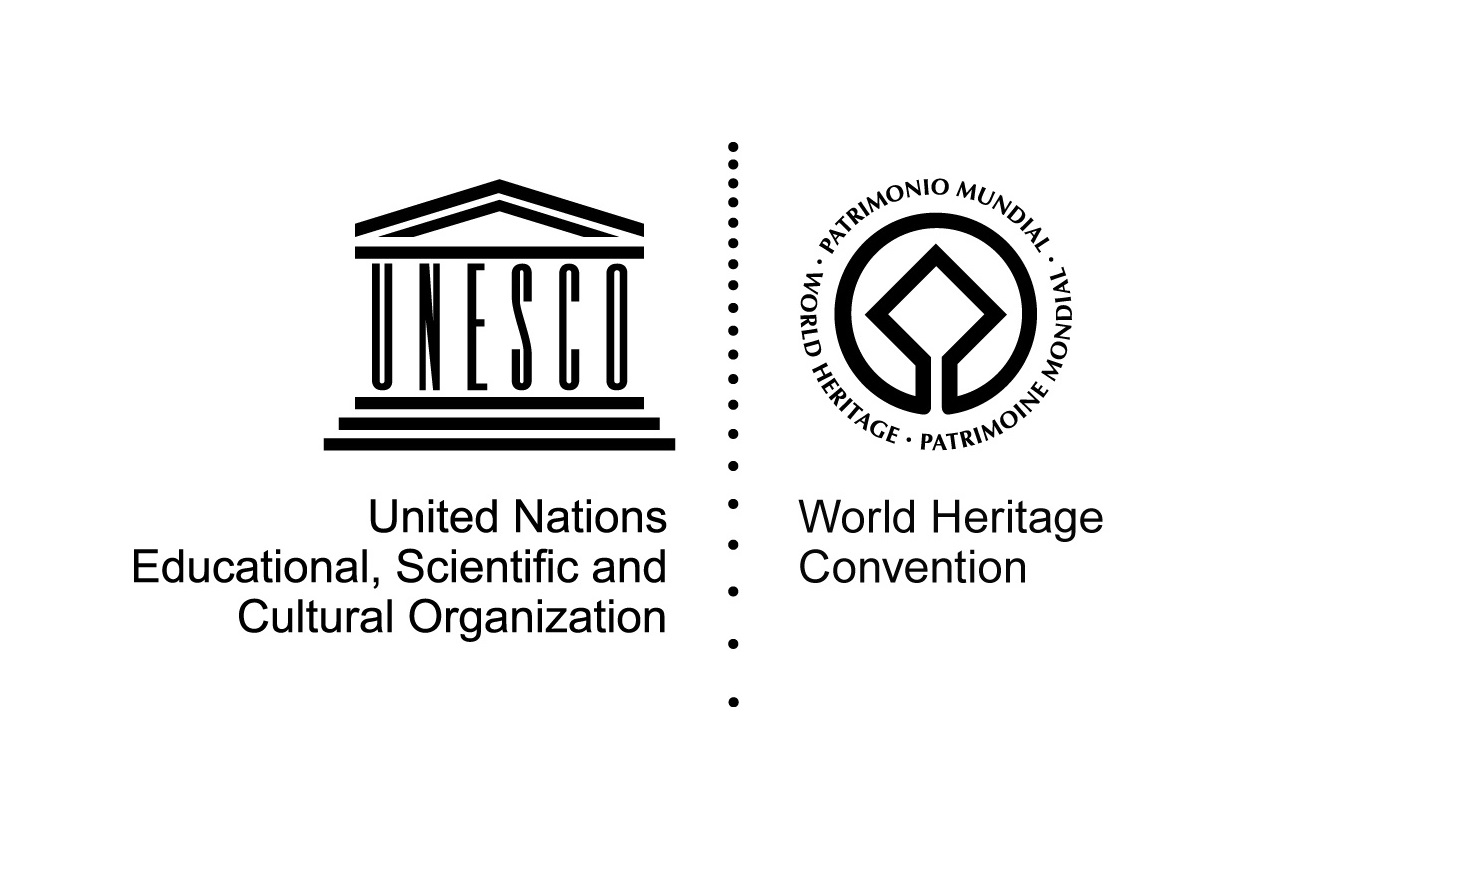 Whc unesco. Эмблема Всемирного наследия. ЮНЕСКО эмблема. Знак Всемирного наследия ЮНЕСКО. Символ ЮНЕСКО.